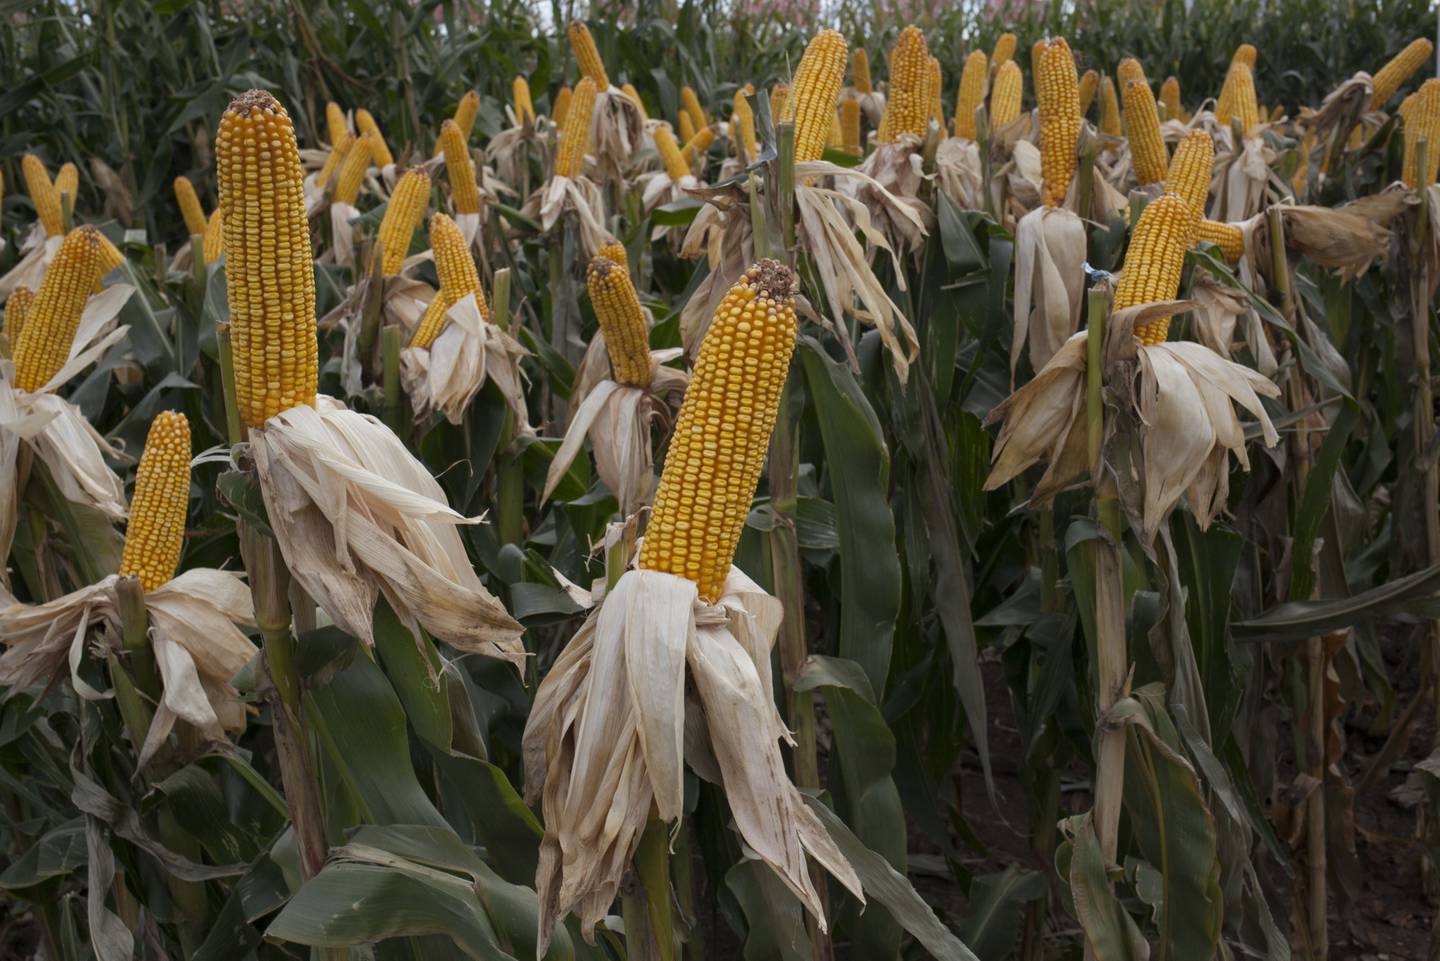 Los tallos de maíz se ven durante la feria agrícola Expoagro en Buenos Aires, Argentina, el miércoles 9 de marzo de 2016.dfd